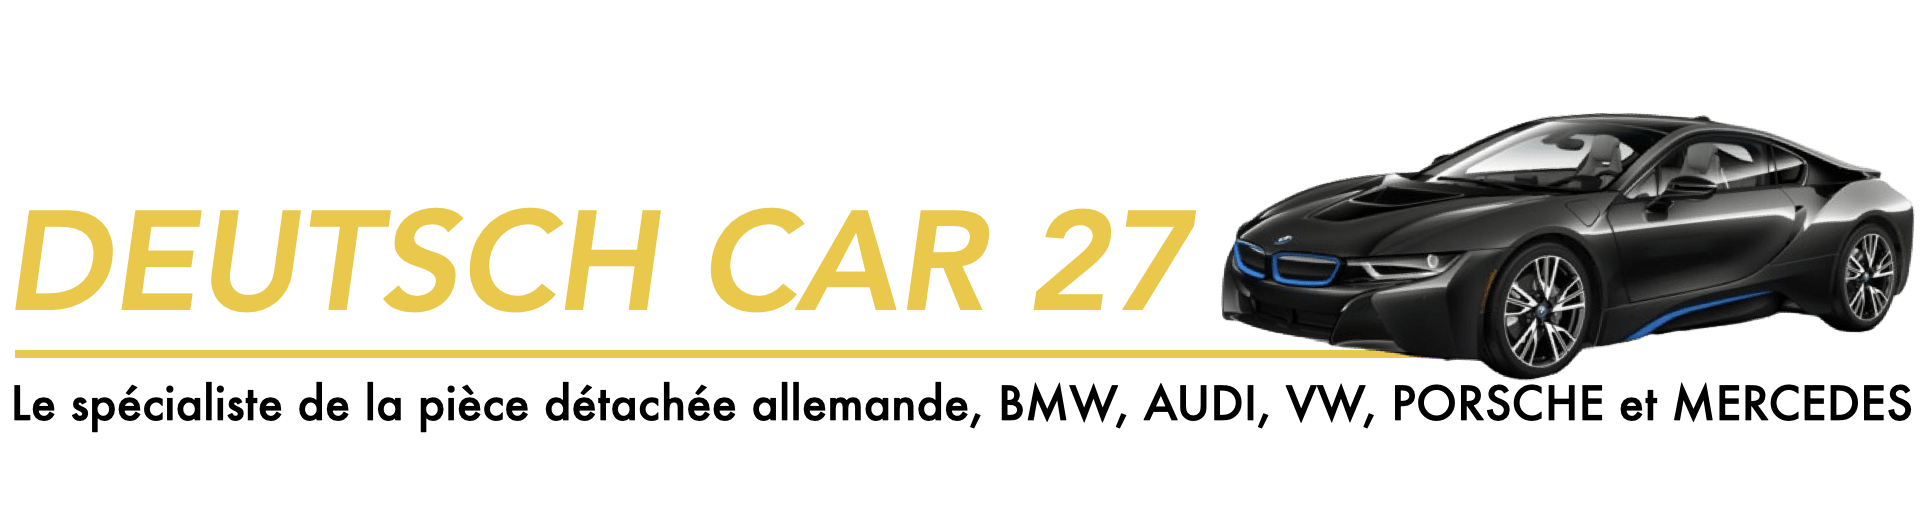 Deutsch Car 27